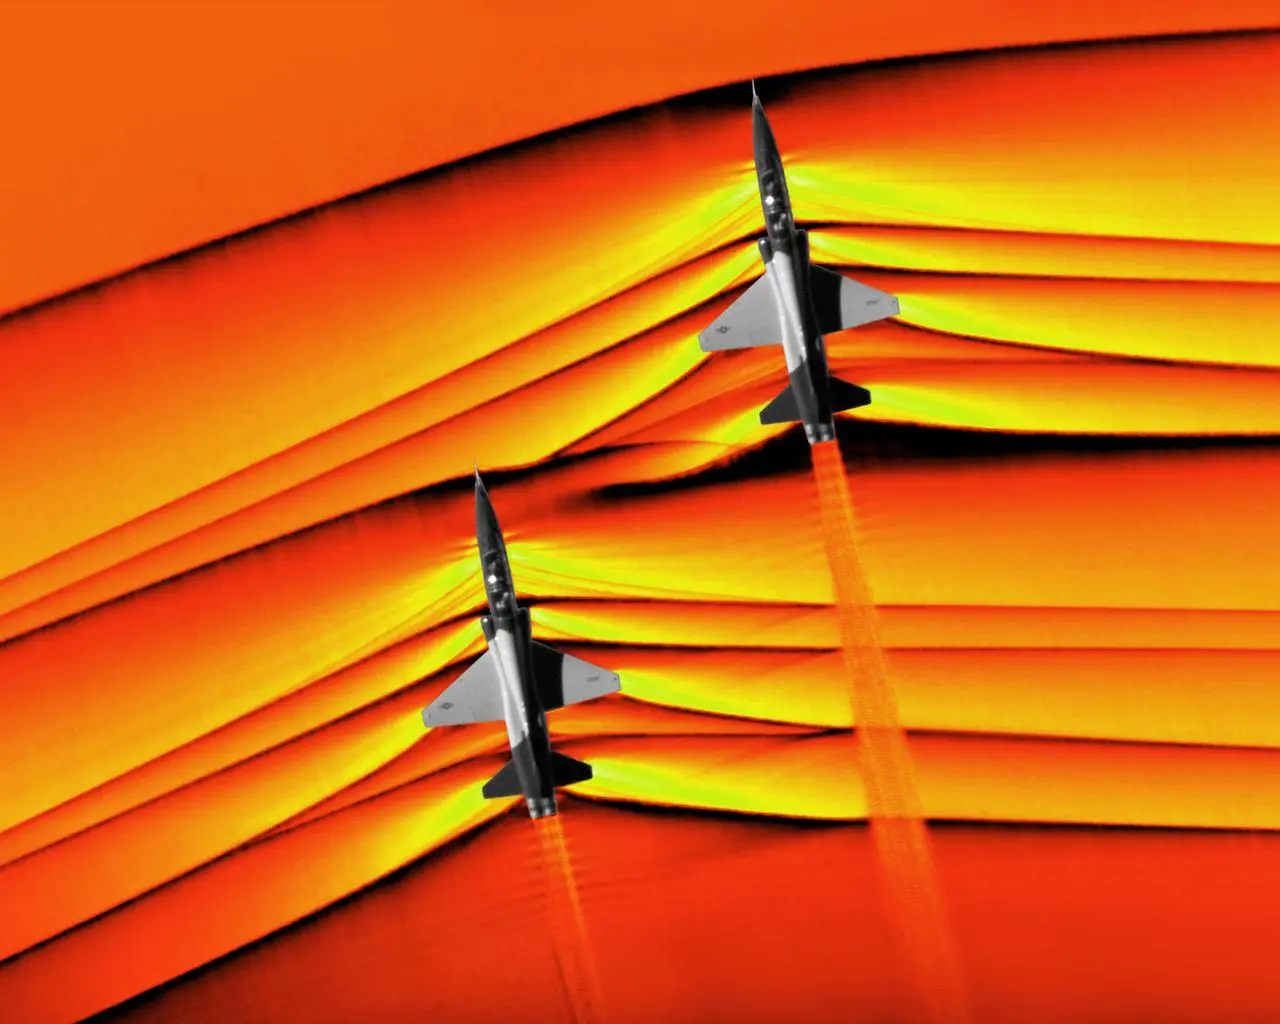 超音速飞行是什么样子?T-38超音速飞行时的高清纹影图来啦